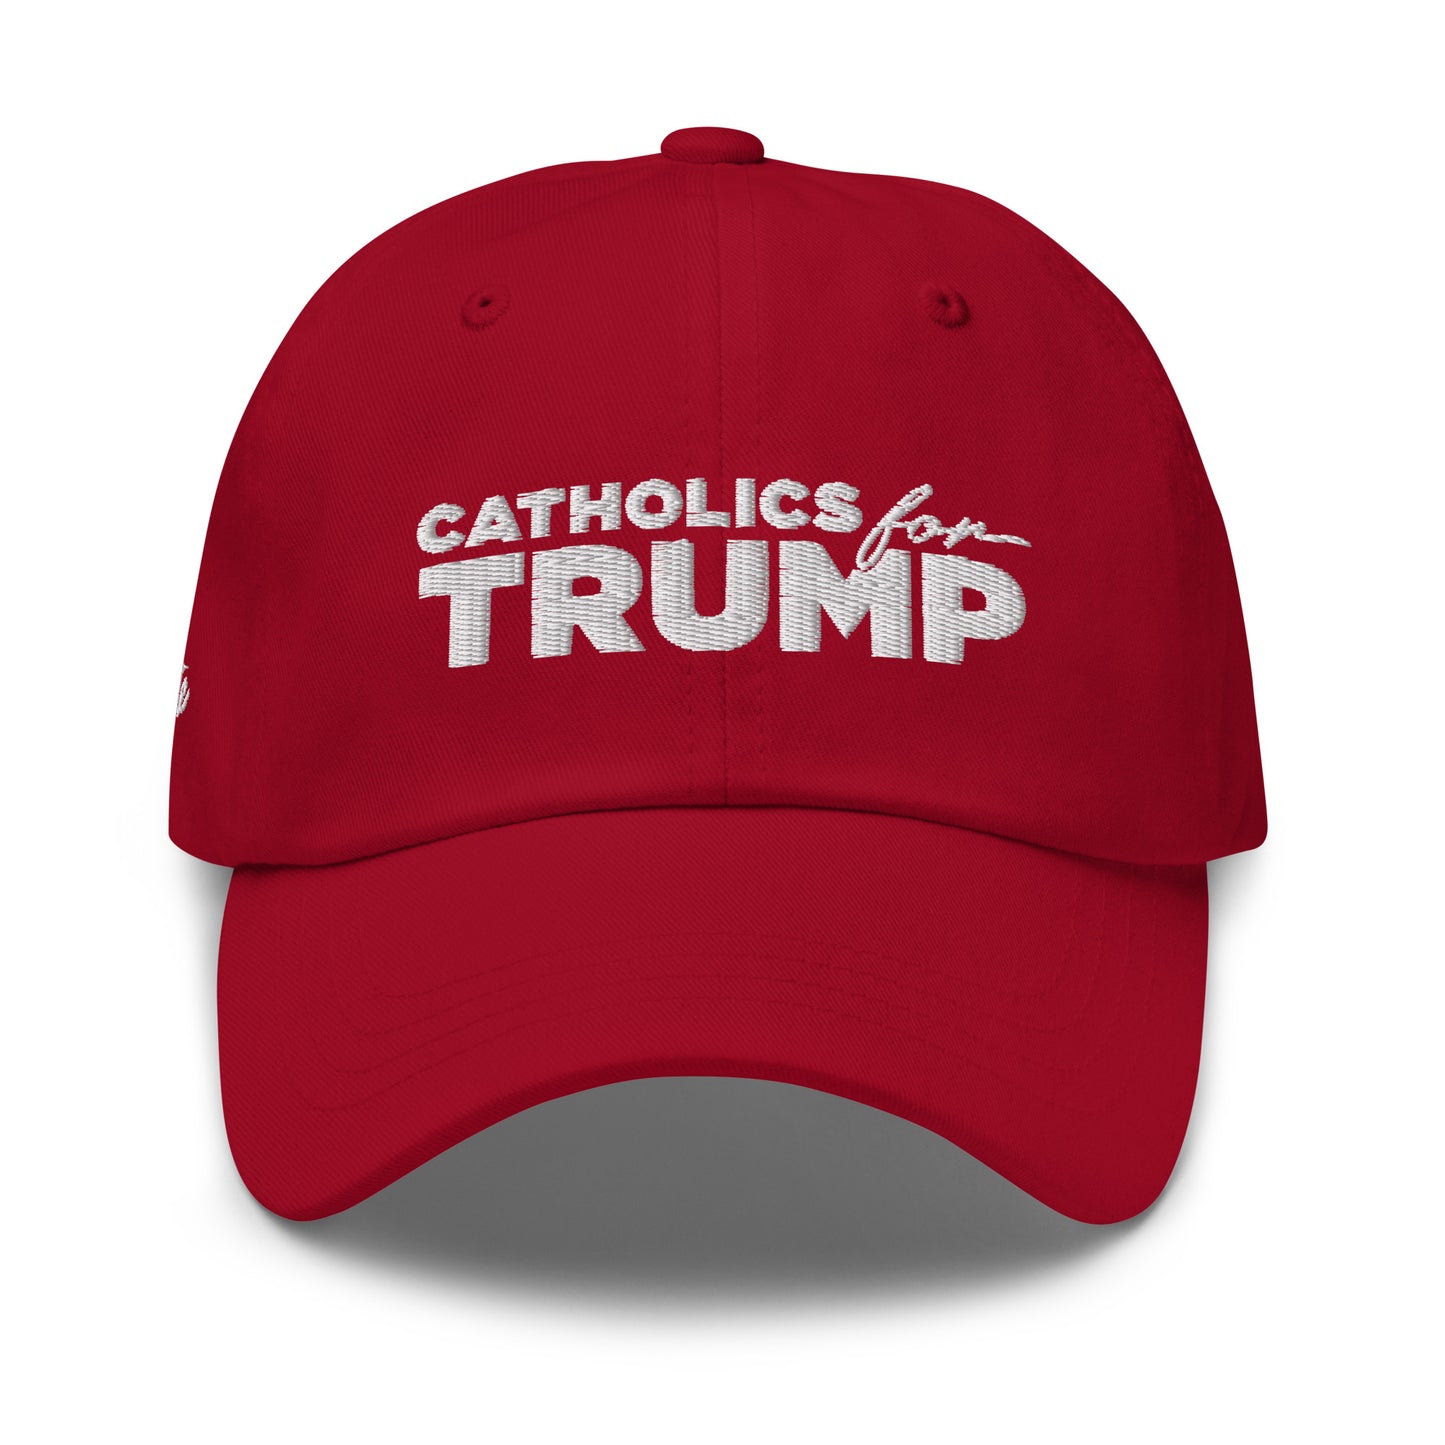 Catholics for Trump Red Cap